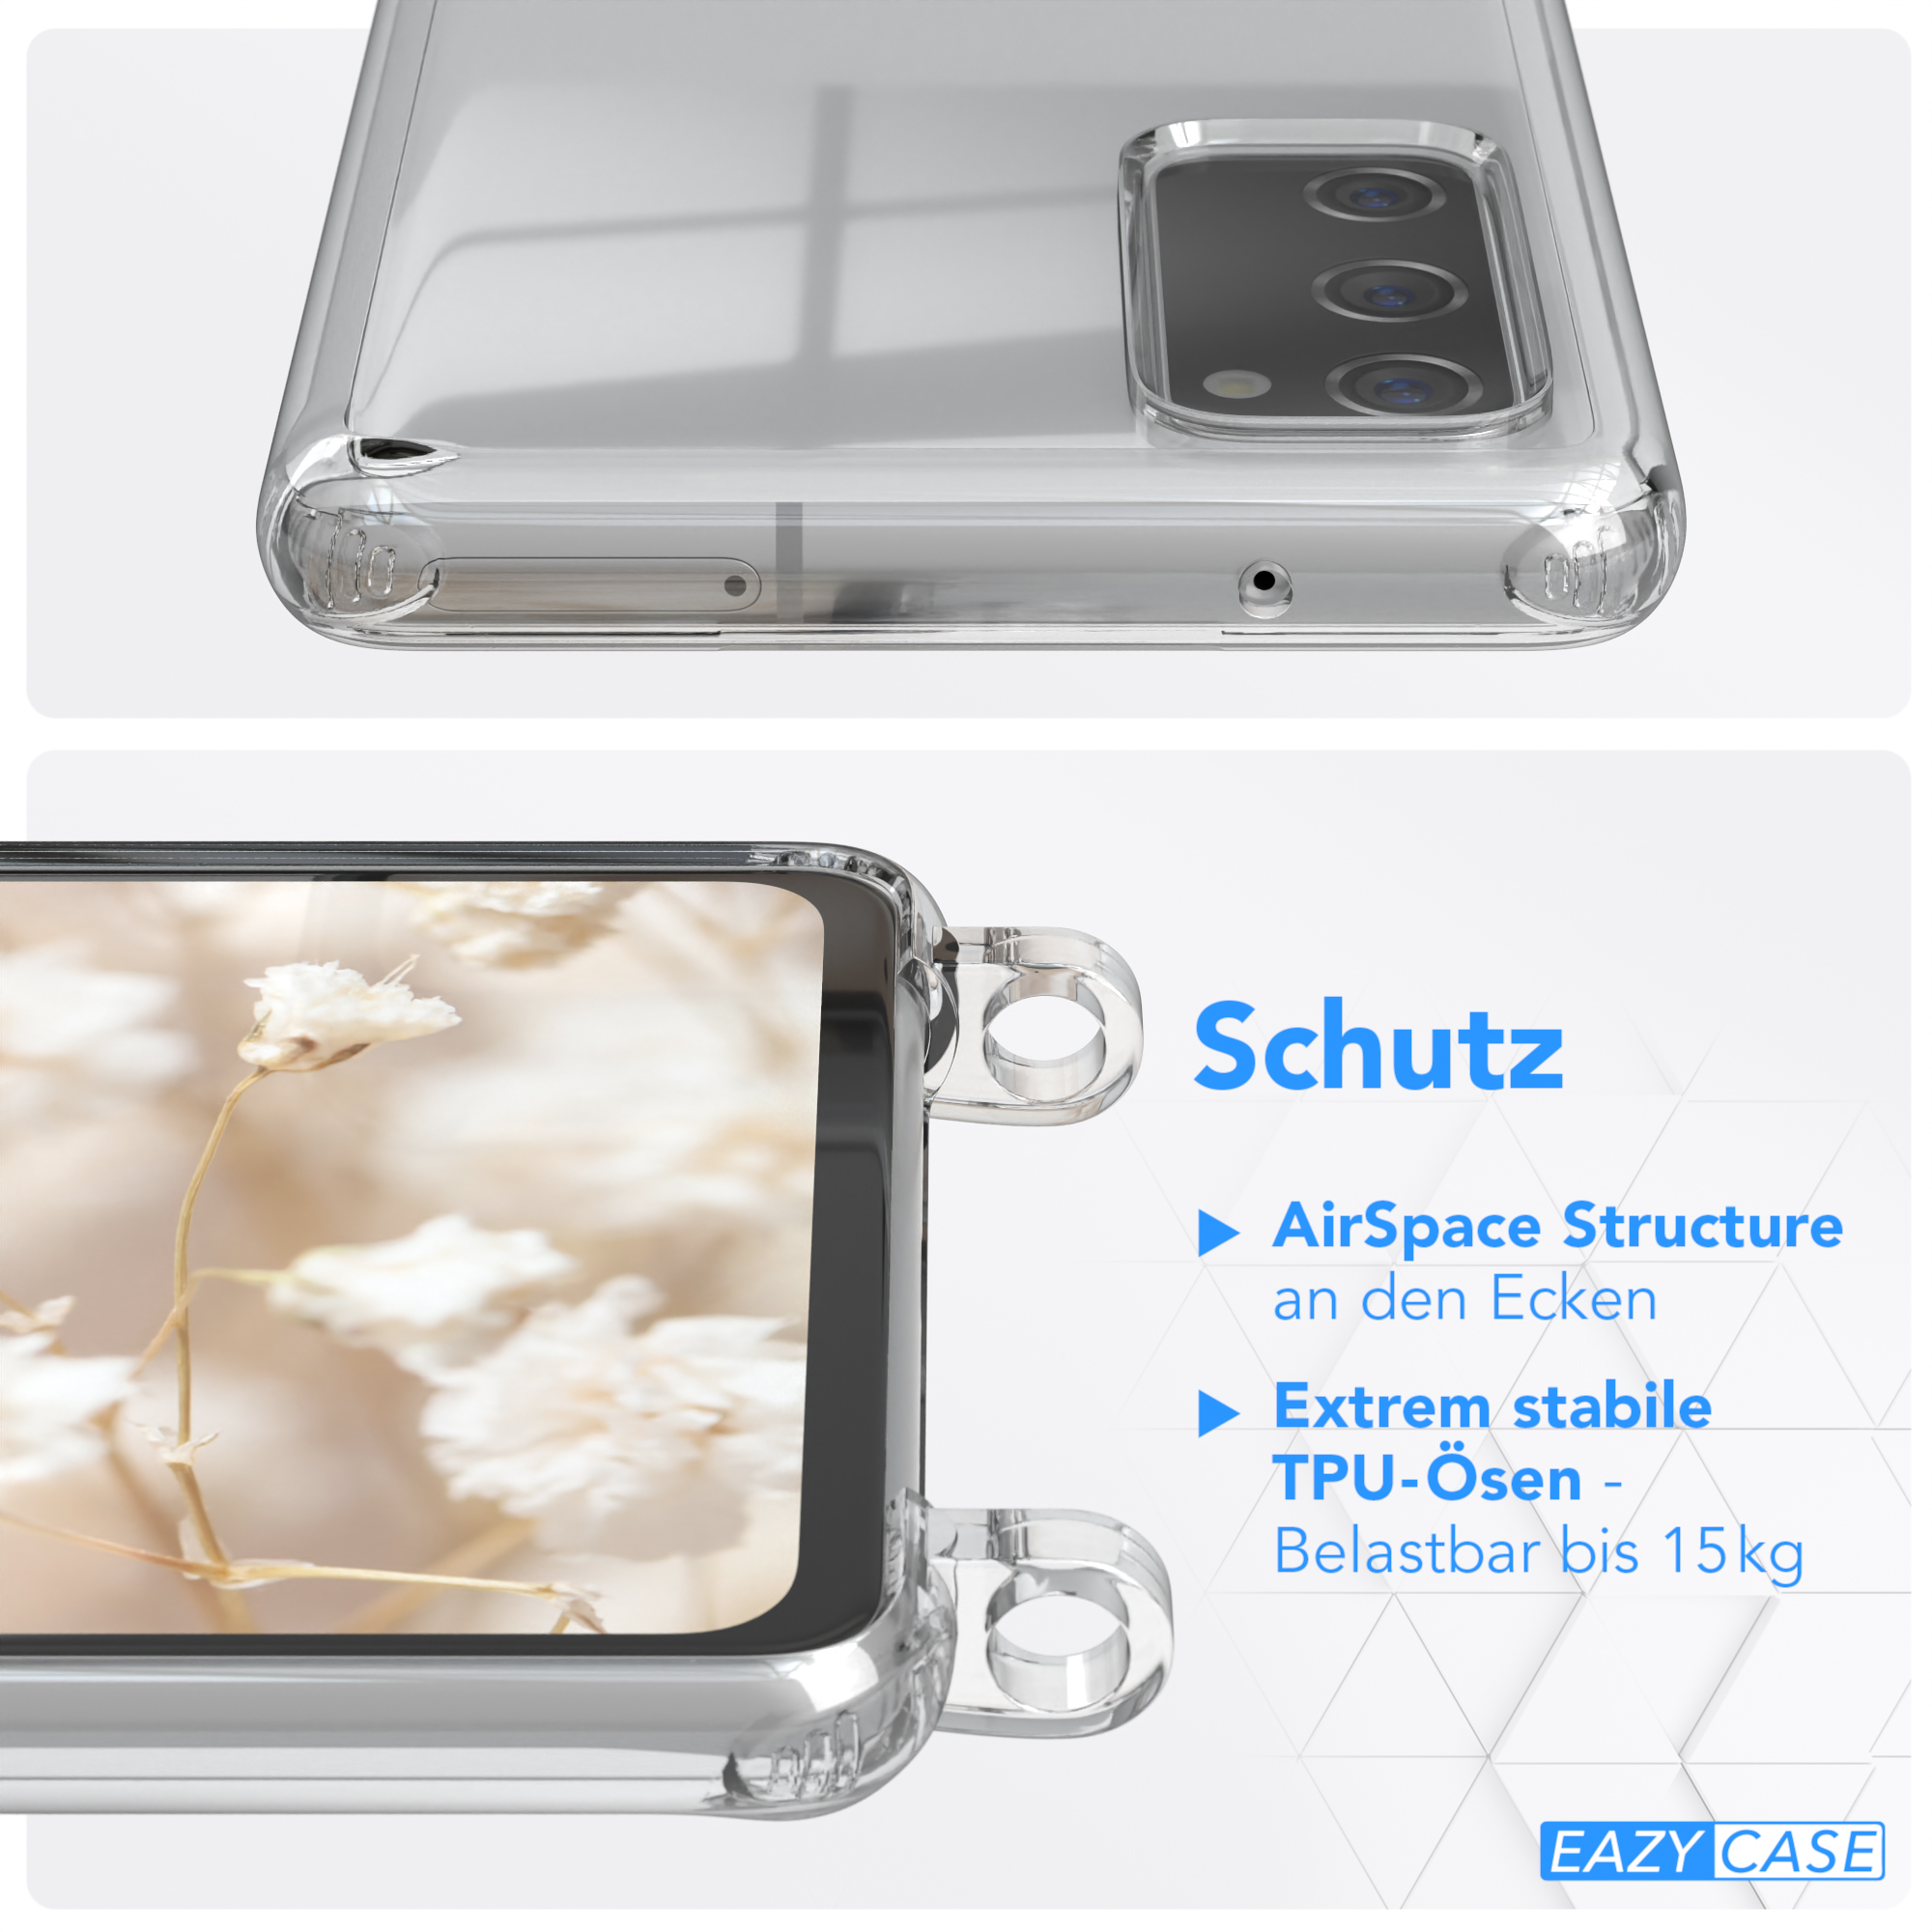 Umhängetasche, Galaxy Style, Handyhülle S20, / Boho Samsung, Transparente Kordel mit Braun Rot CASE EAZY